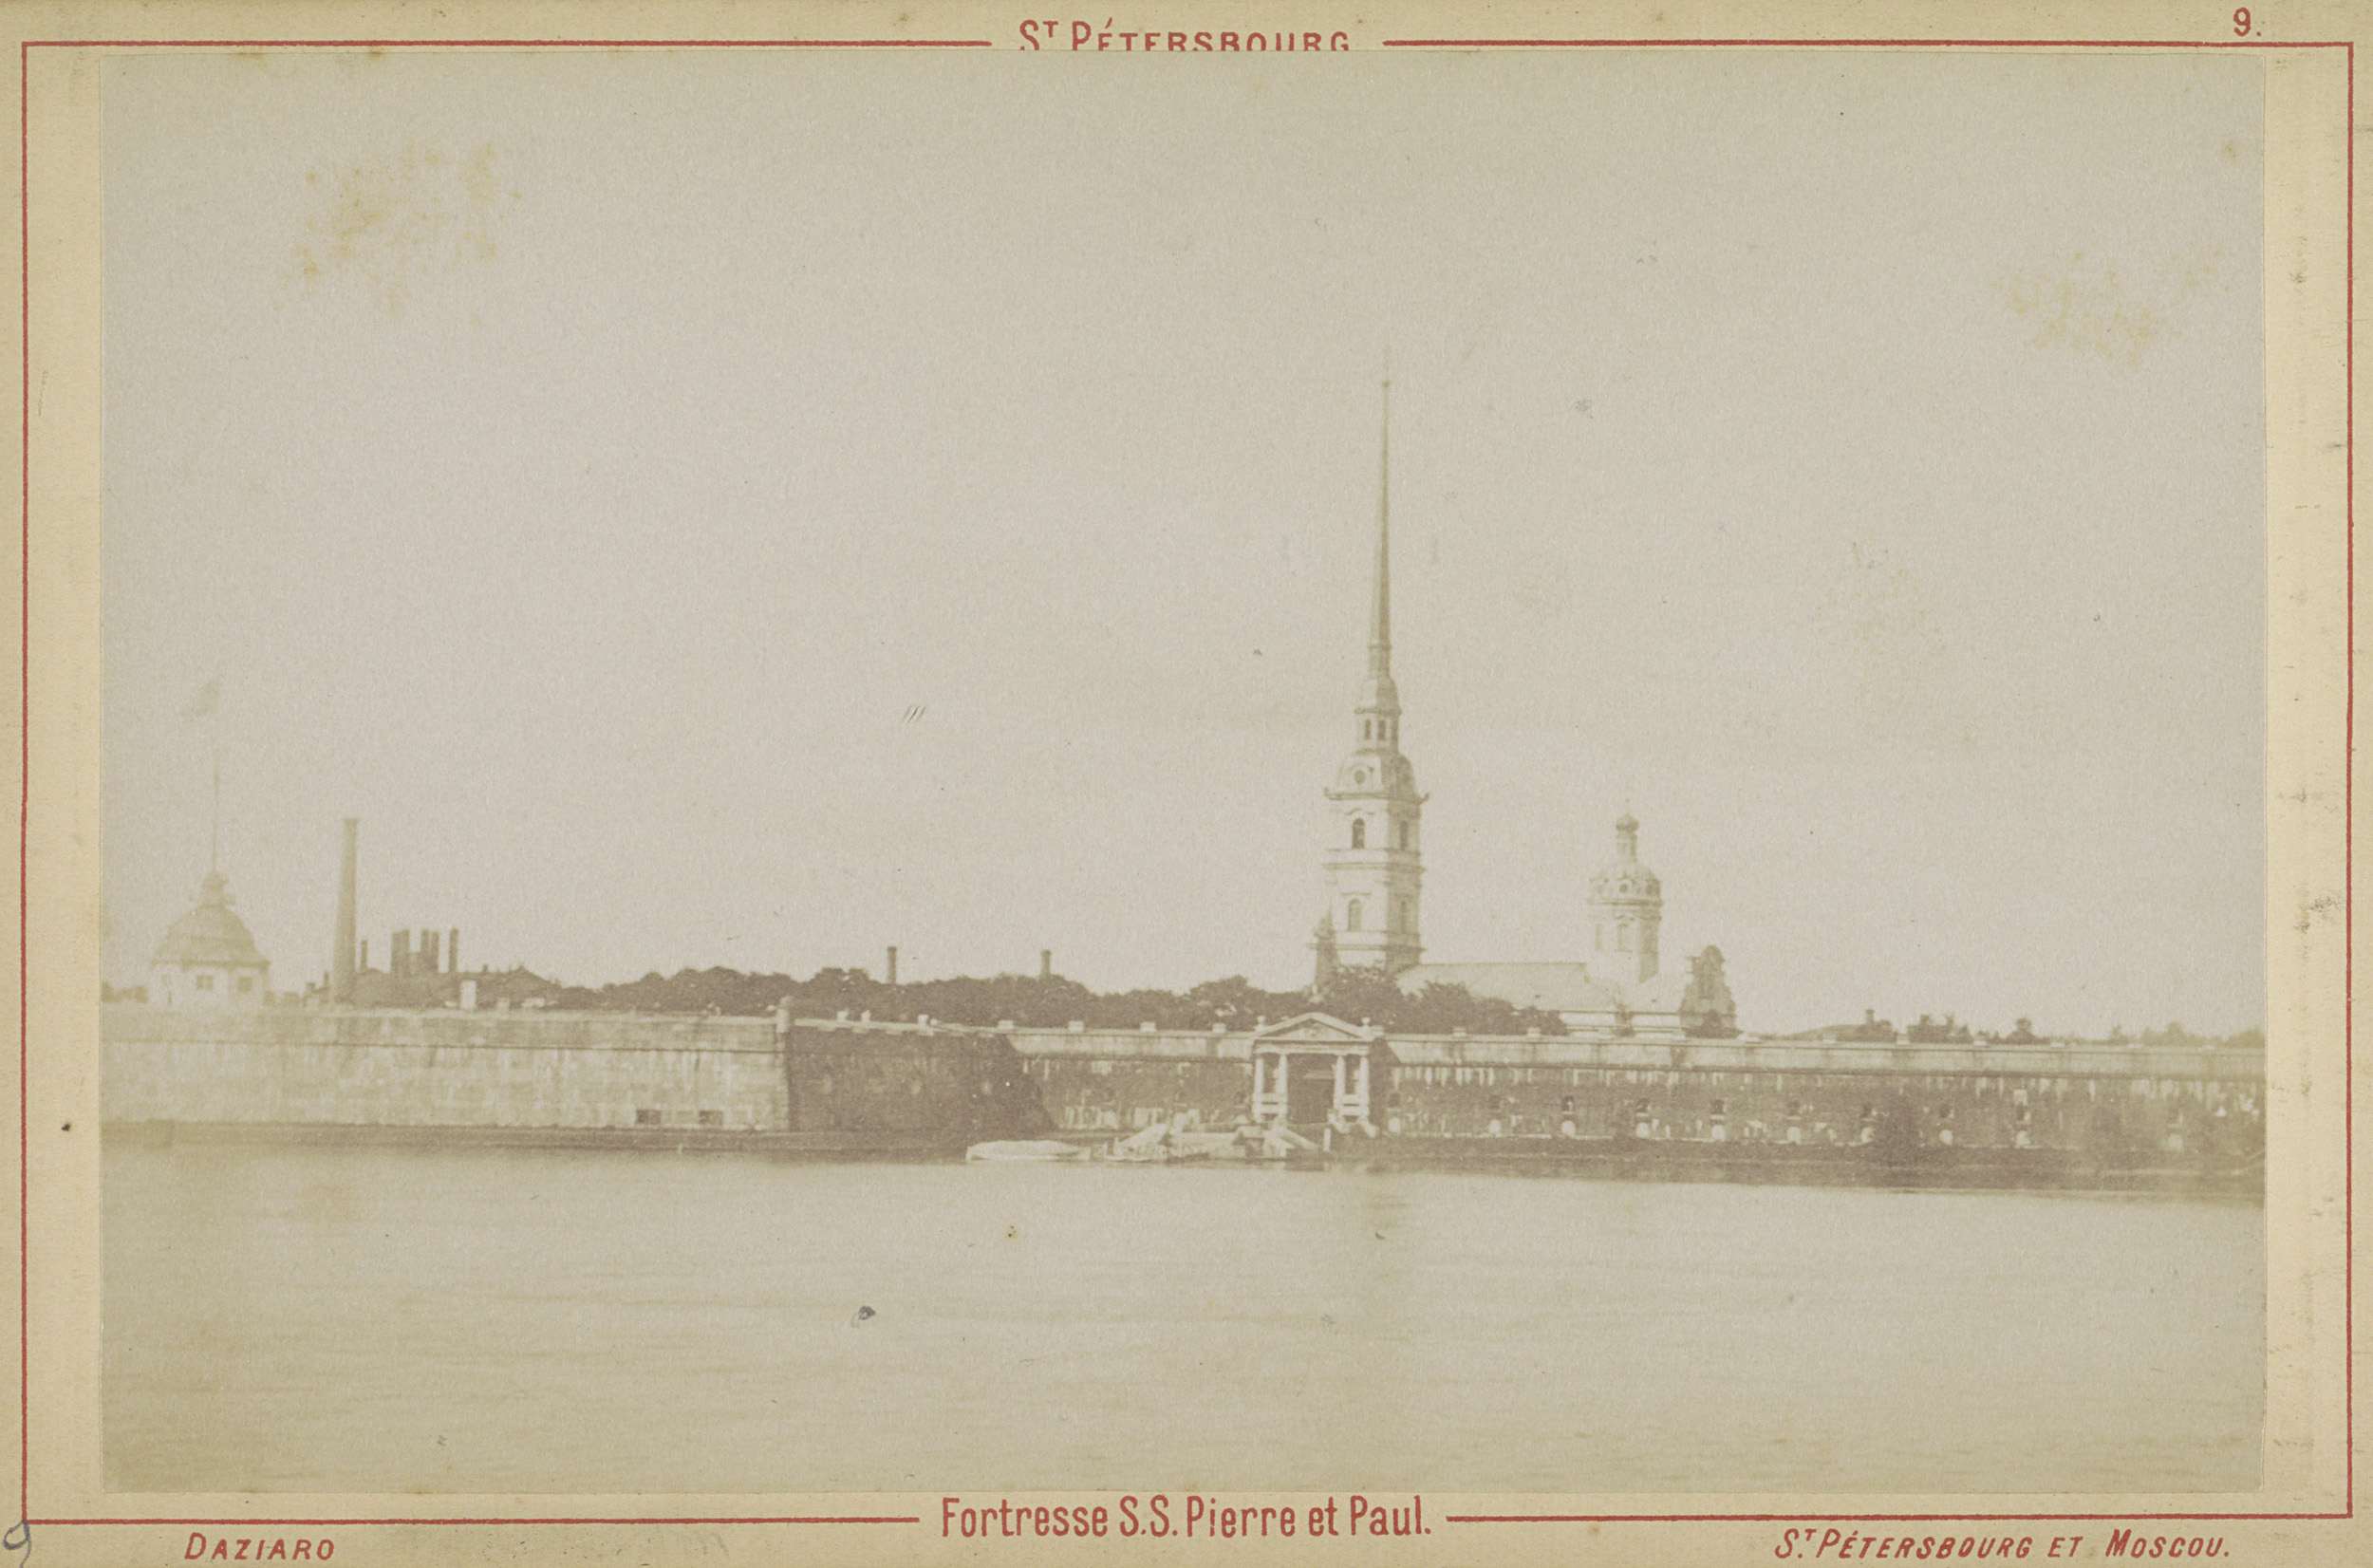 St. Pétersbourg. Fortresse S.S. Pierre et Paul., Gezicht op de Petrus-en-Paulusvesting in Sint-Petersburg met op de voorgrond de Neva